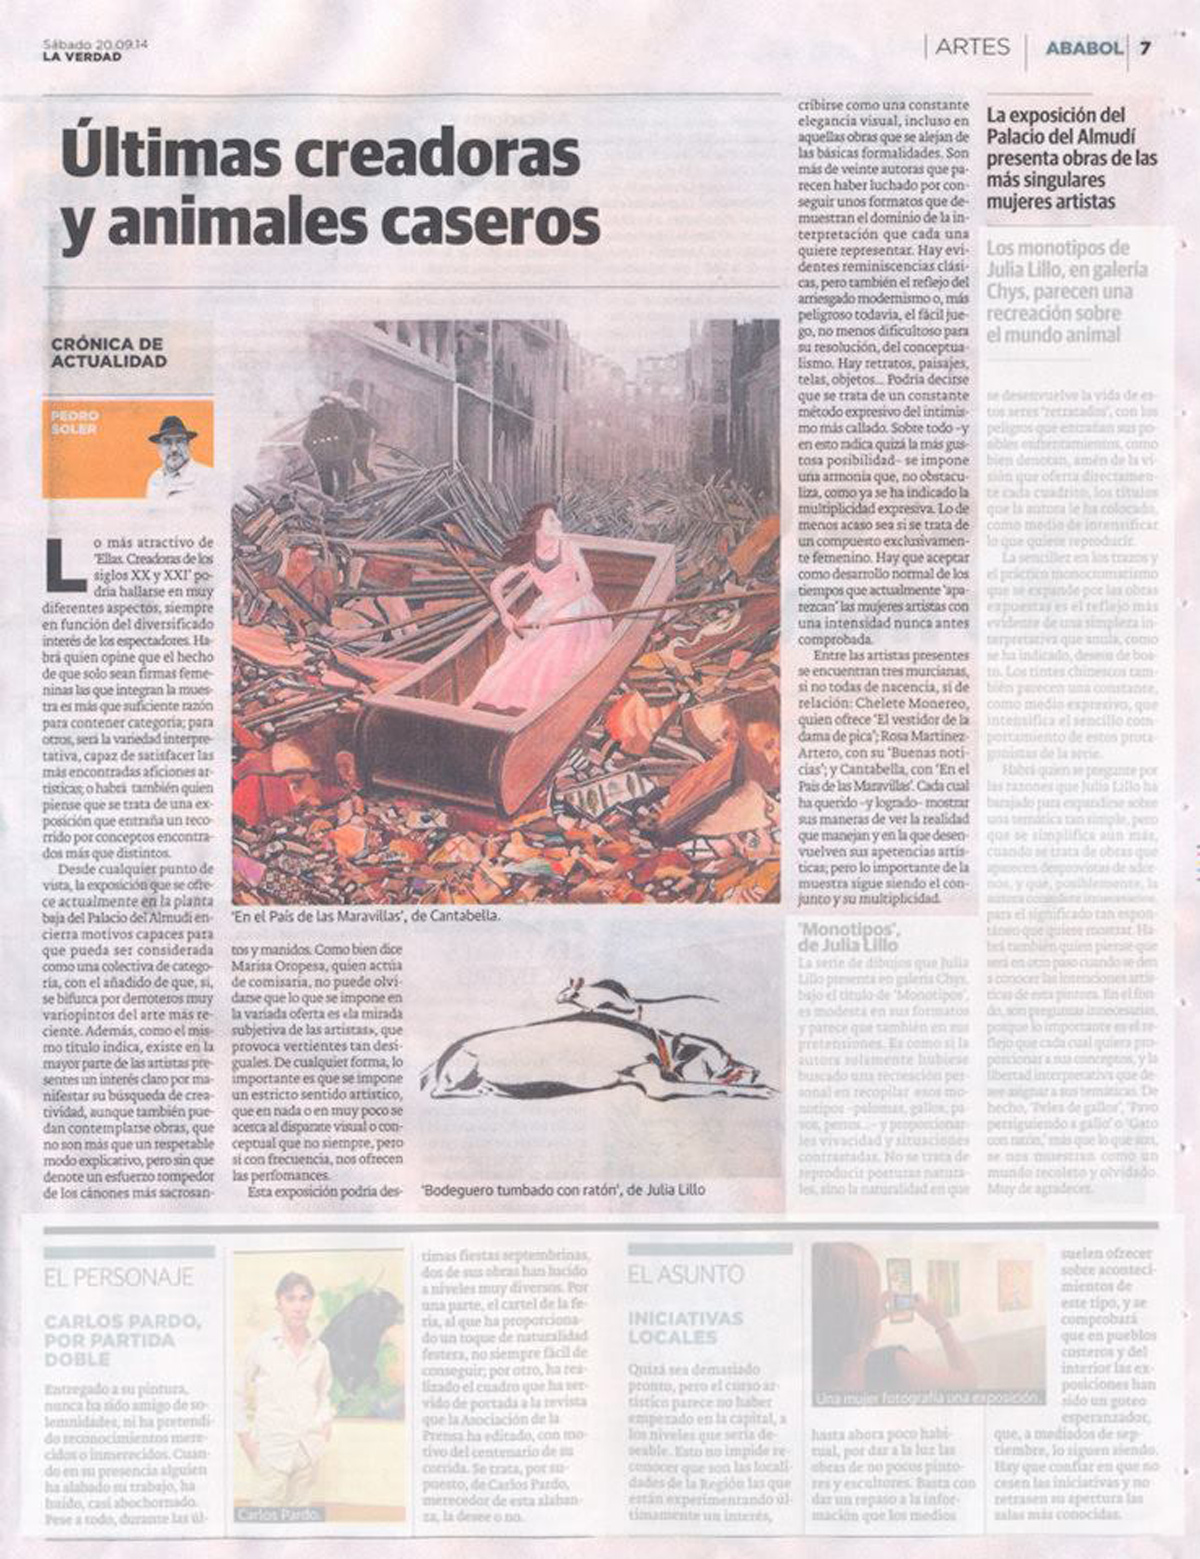 Noticias y Prensa - Babelarte.com